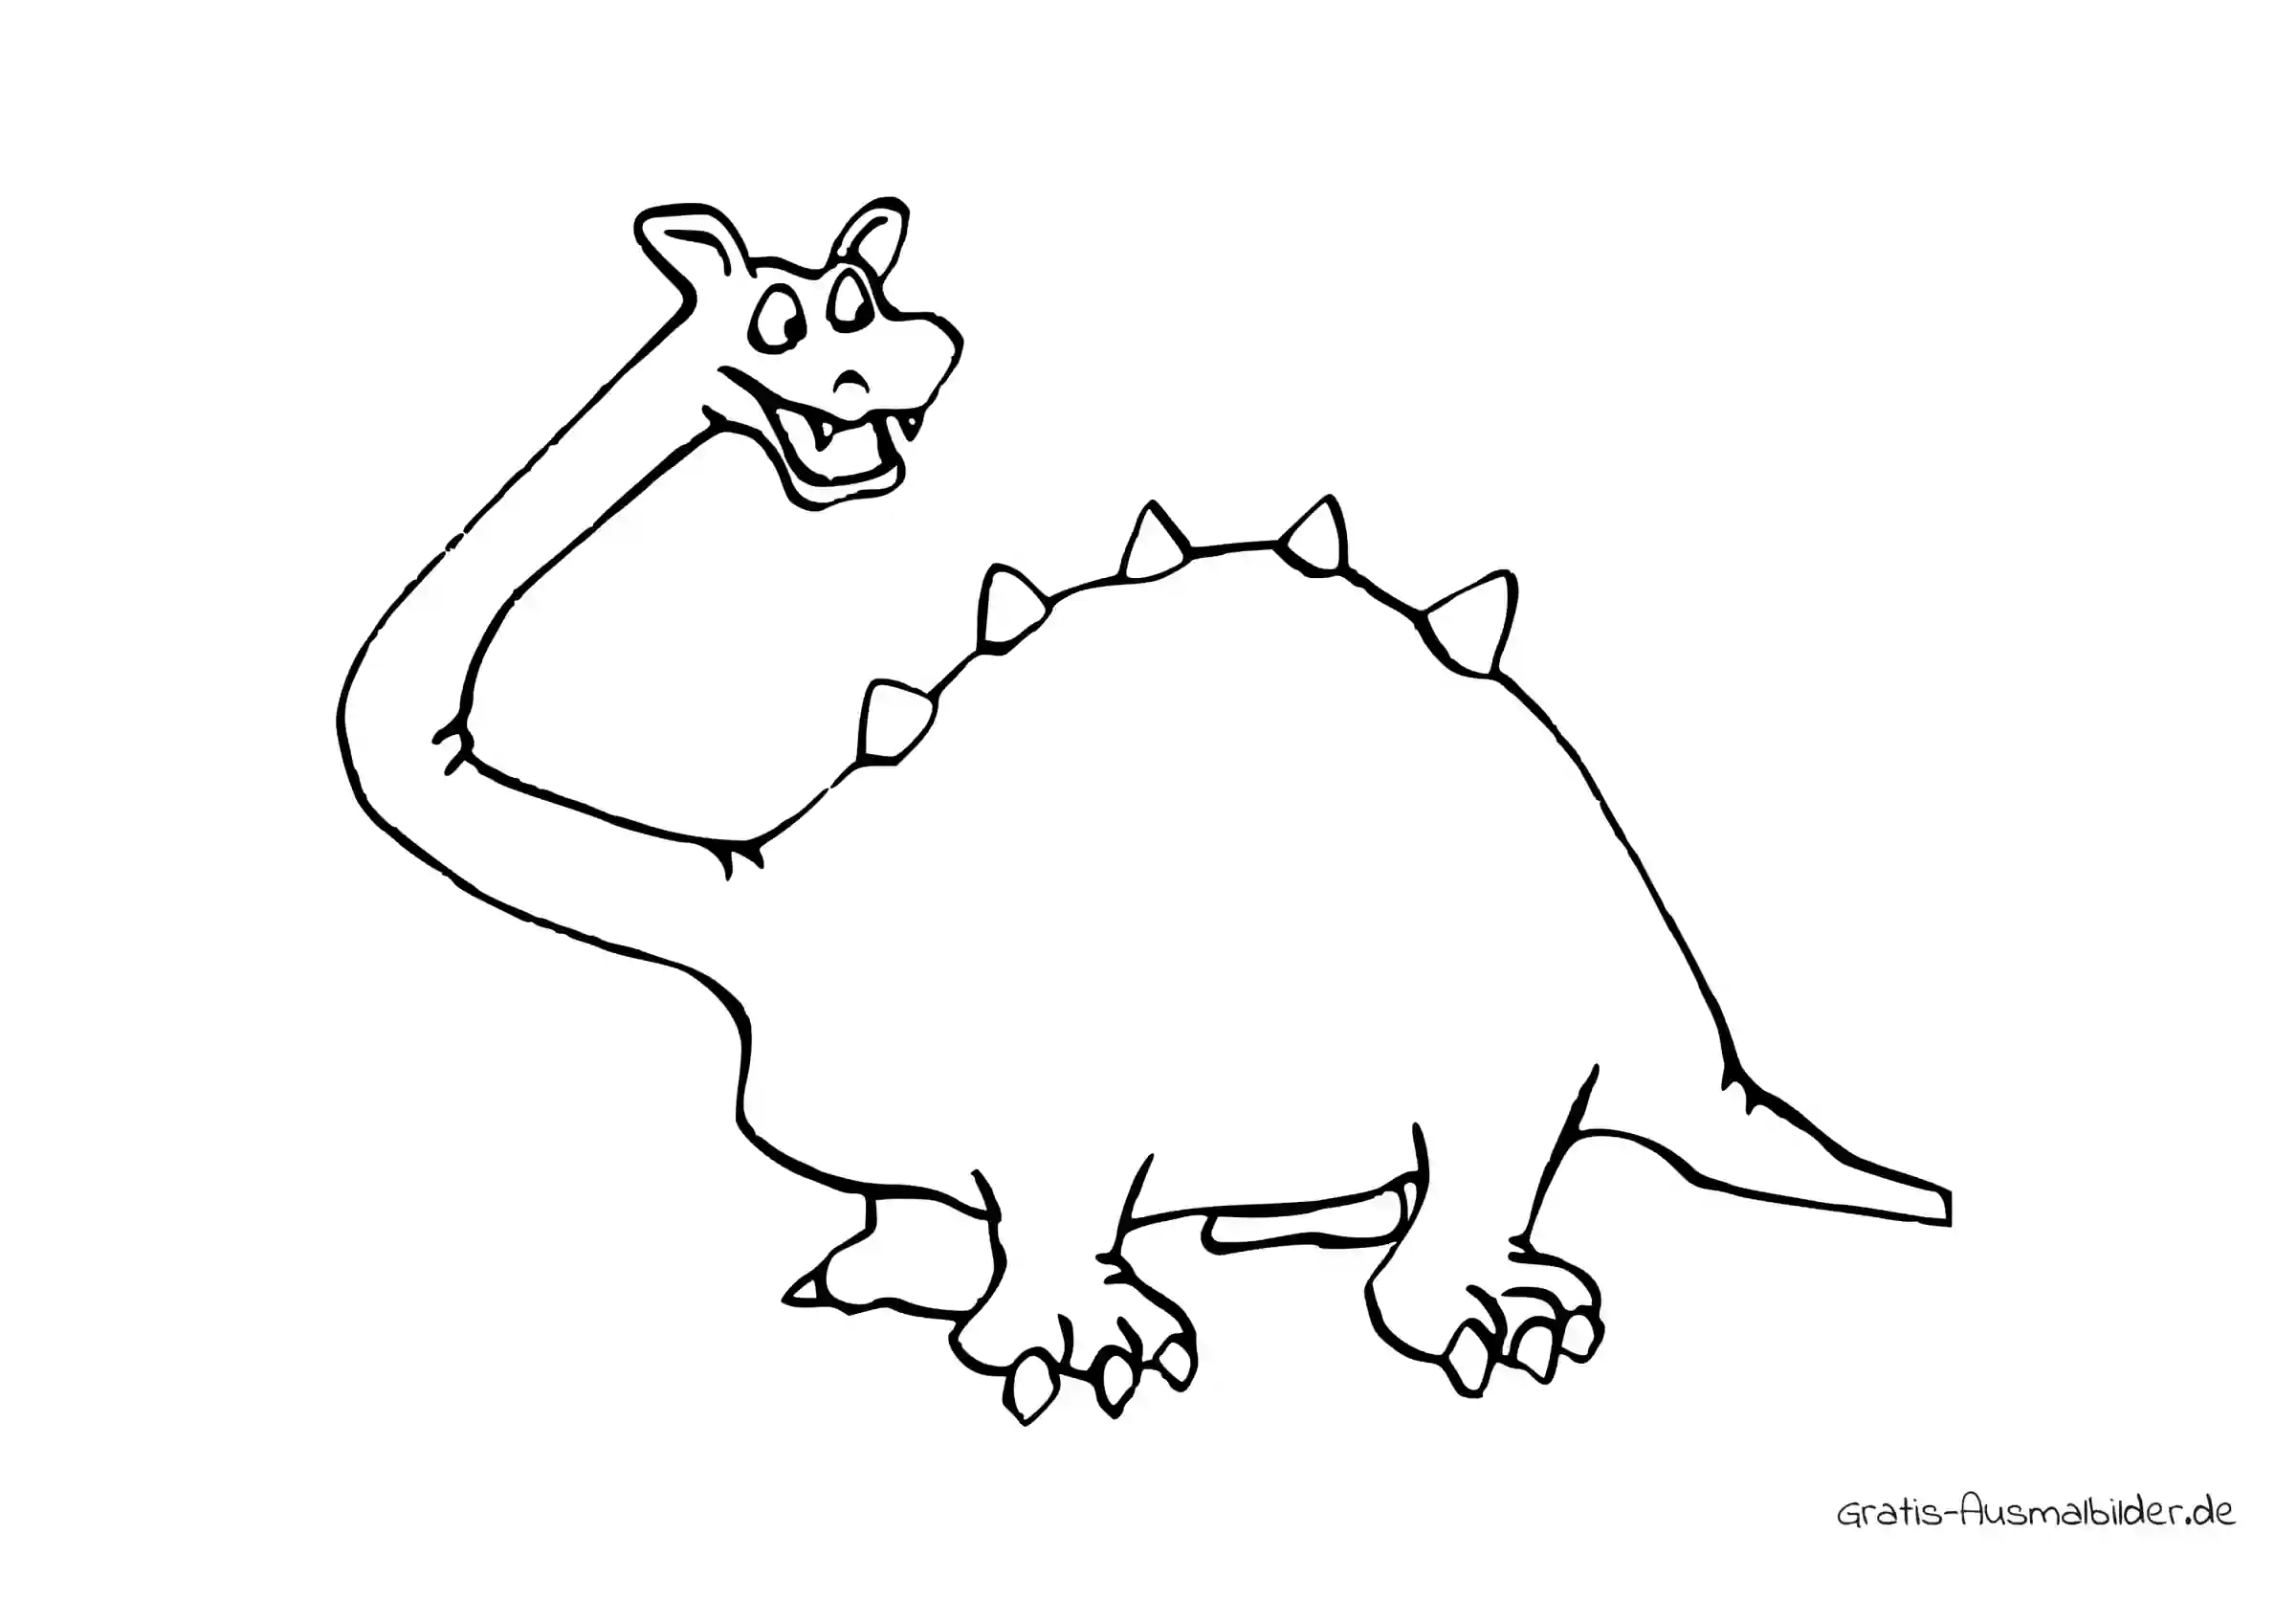 Ausmalbild Ausserirdische Dinosaurier